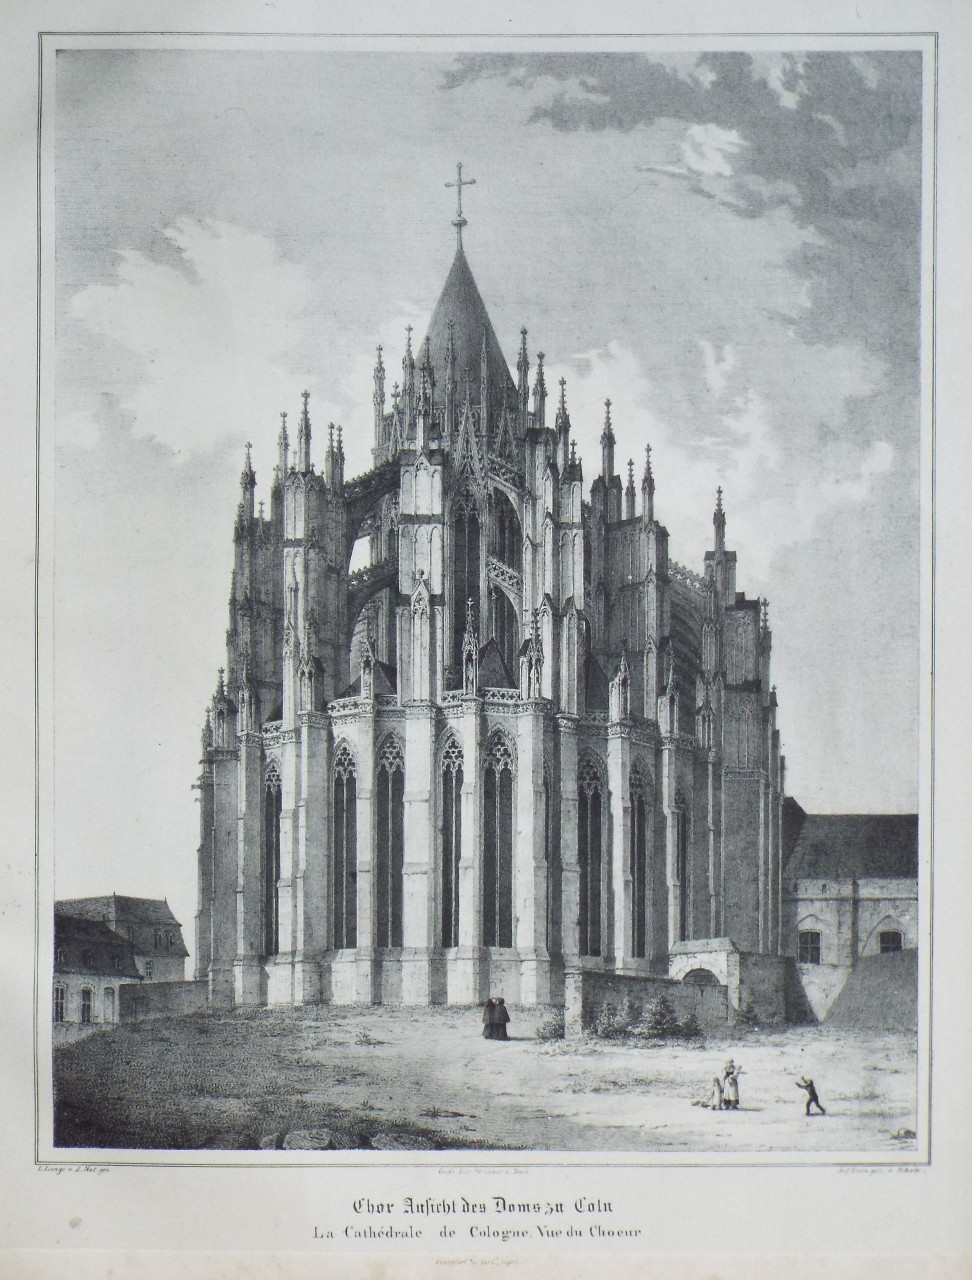 Lithograph - Thor Ansicht des Doms au Coln
La Cathedrale de Cologne, Vue de Choeur. - 